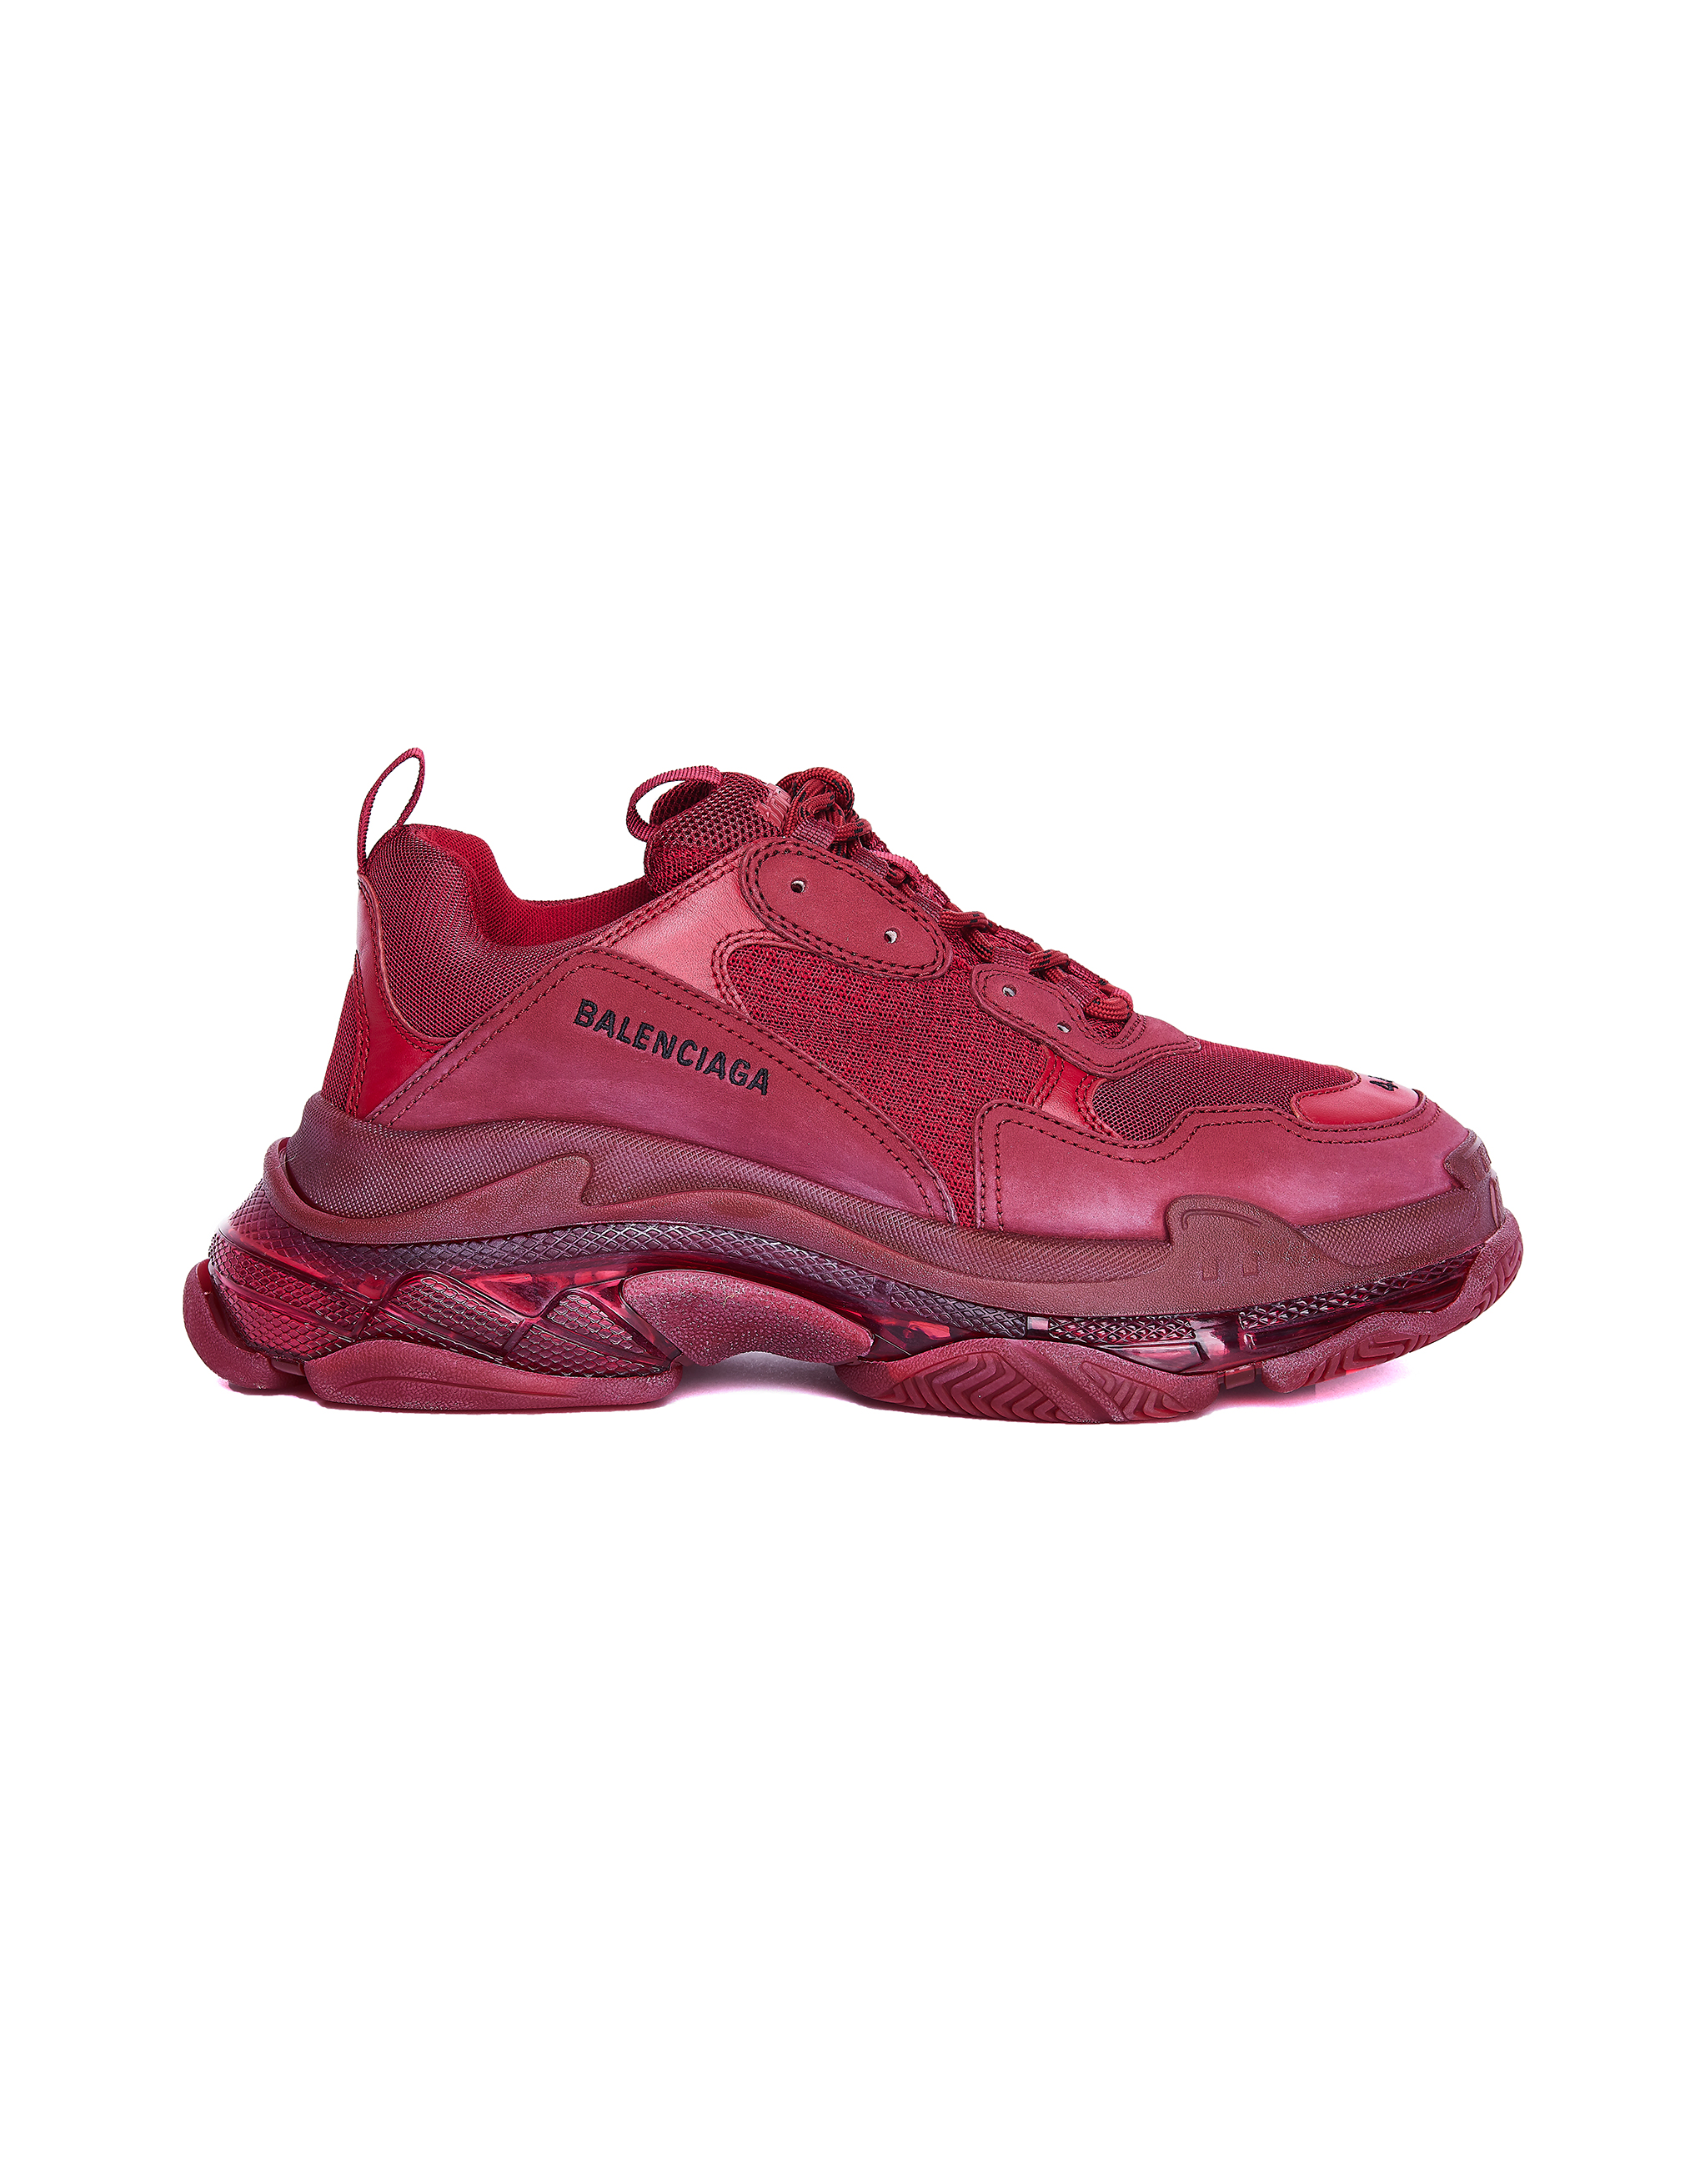 burgundy balenciaga sneakers